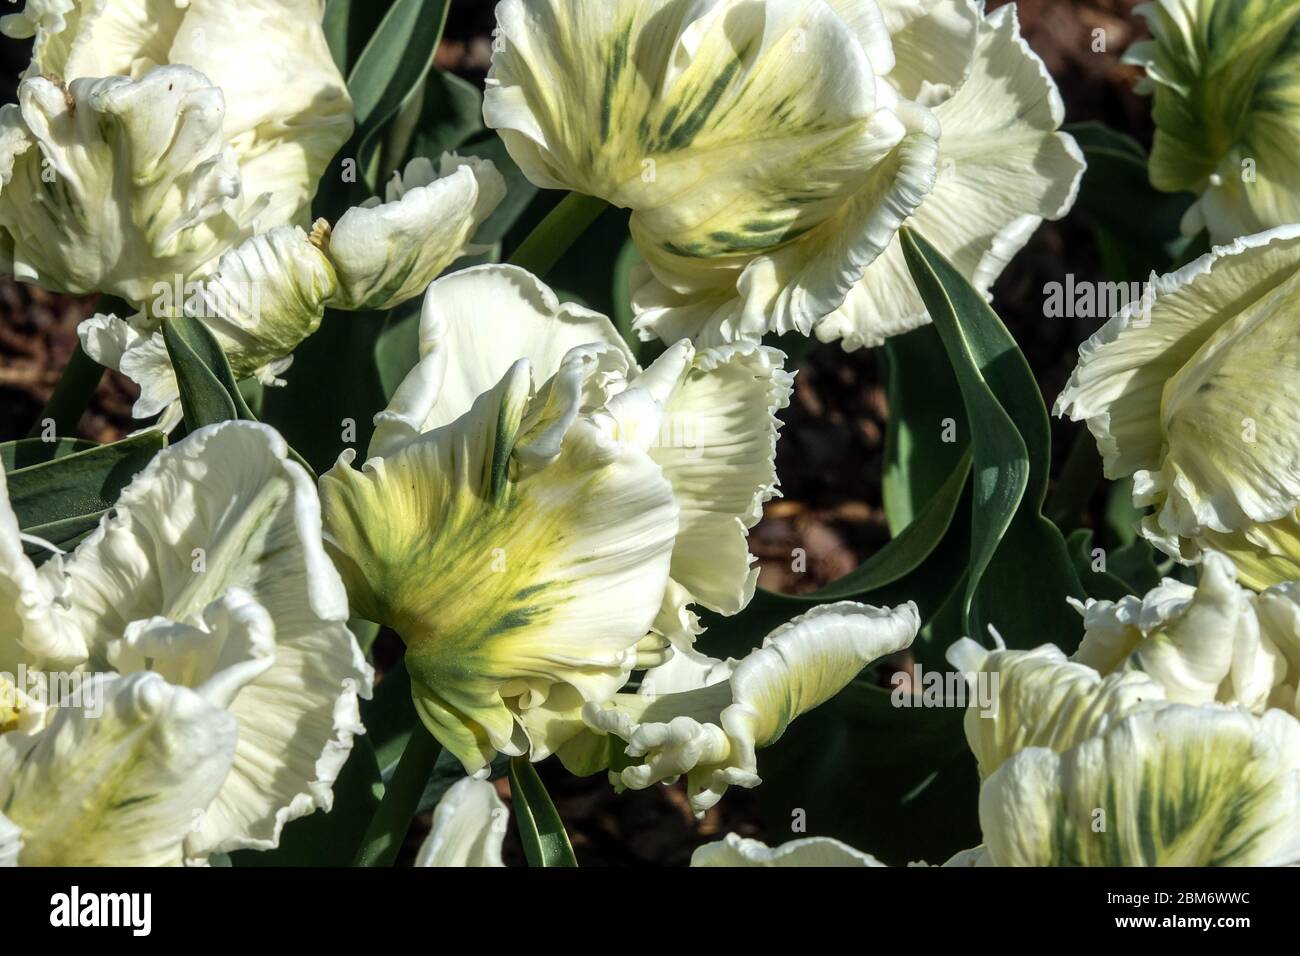 Weiße Tulpen 'Super Papageien' Tulpenblüten Tulipa Blumen weiß geraffte verdrehte Blütenblätter gefiedert Grün Weiße Papageien Tulpen blühendes Blumenbett weiß Stockfoto